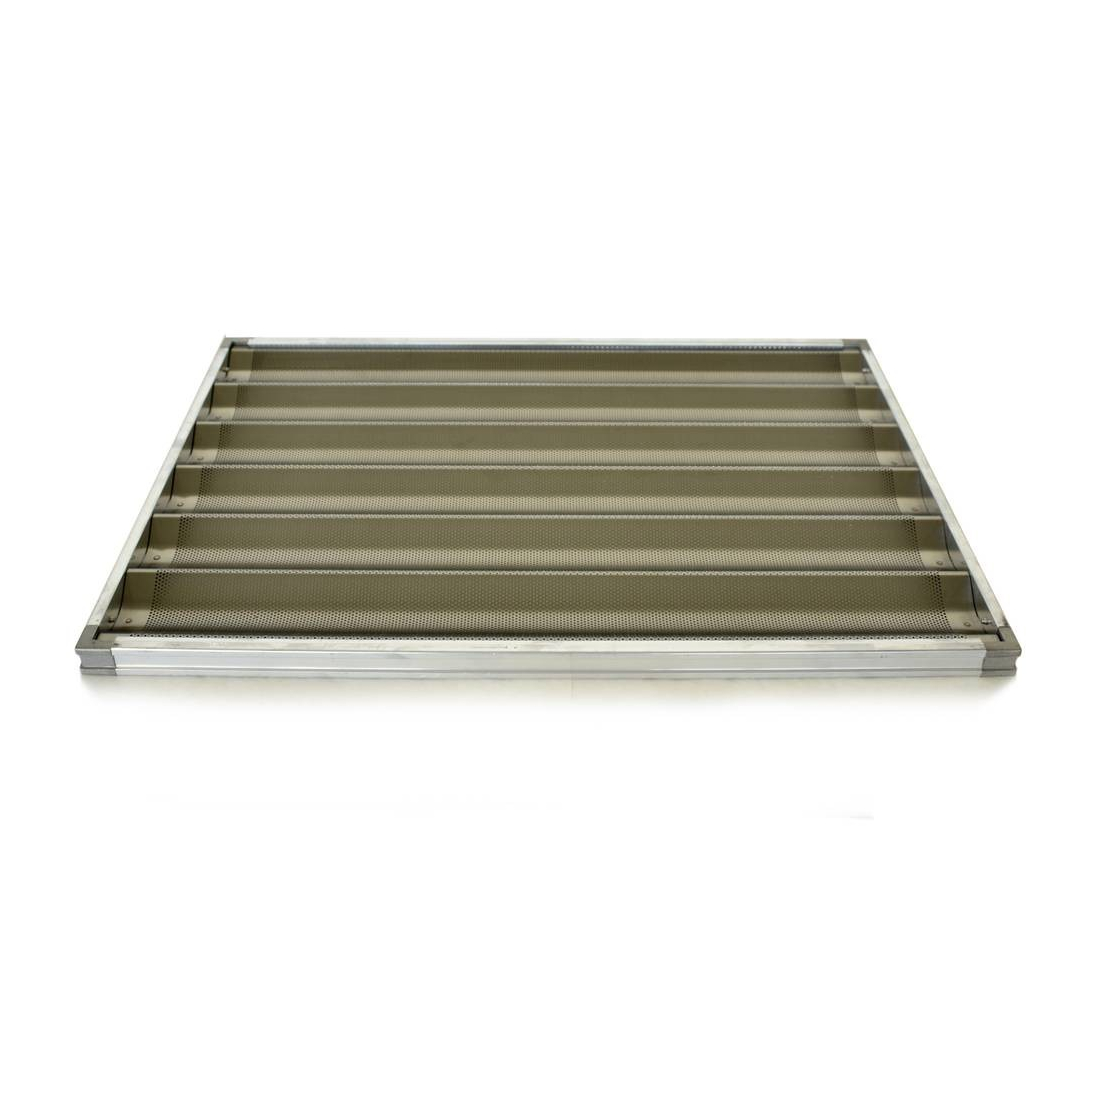 M.C.E Perforated Corrugated Aluminum Trays 45x75cm